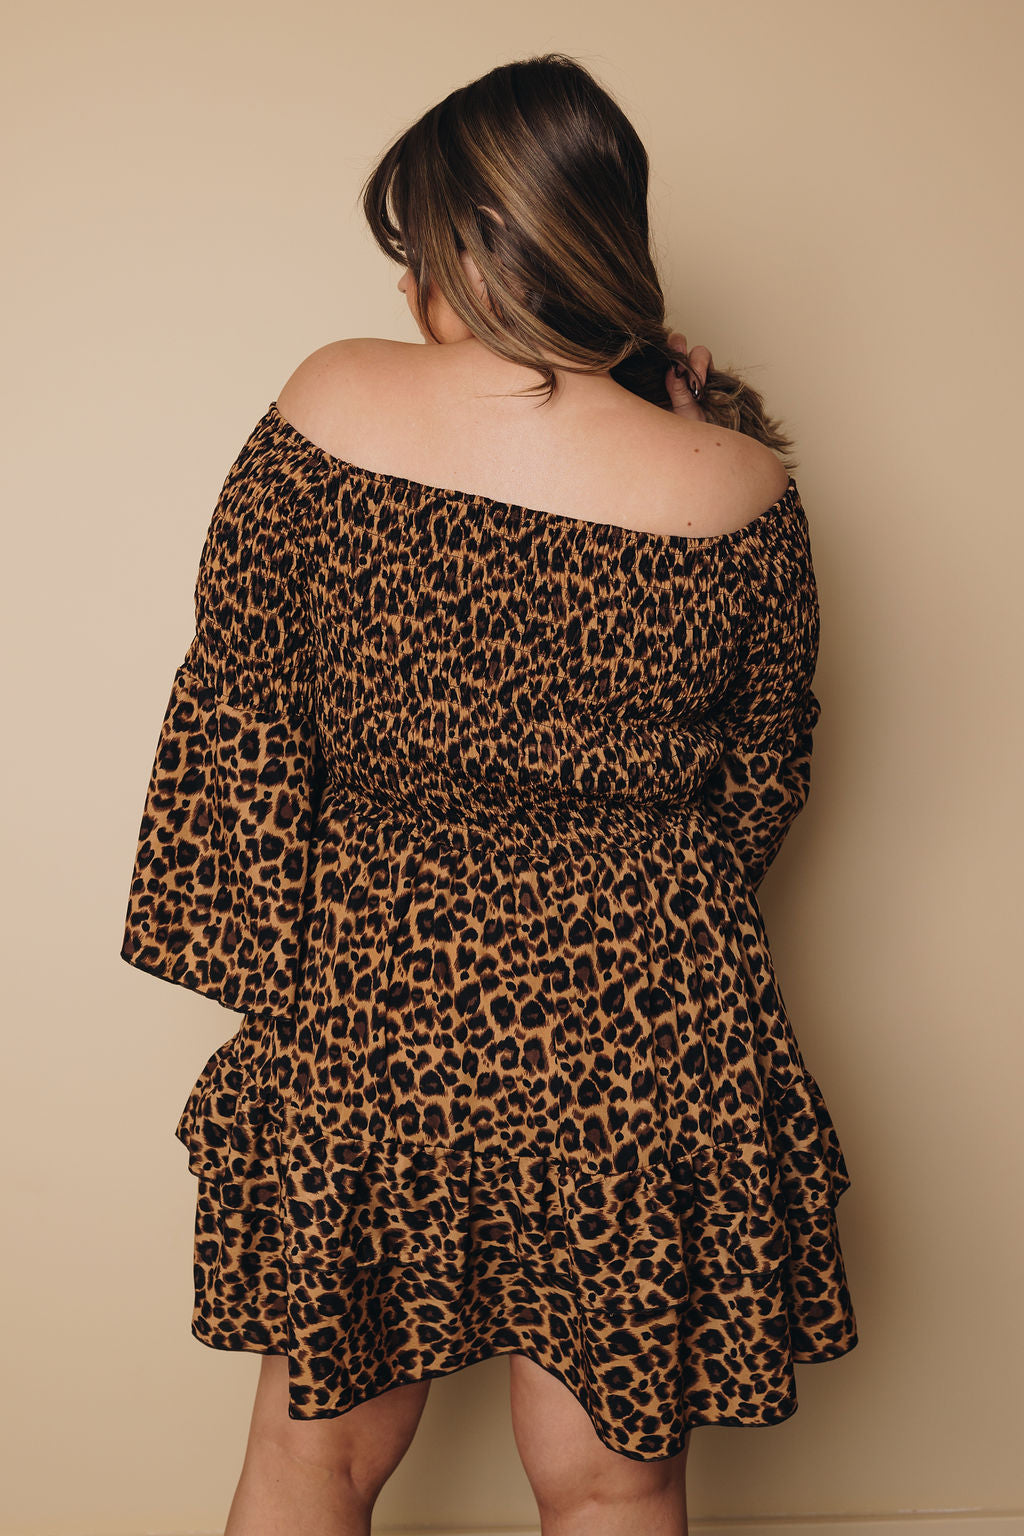 Plus Size Melanie Leopard Dress